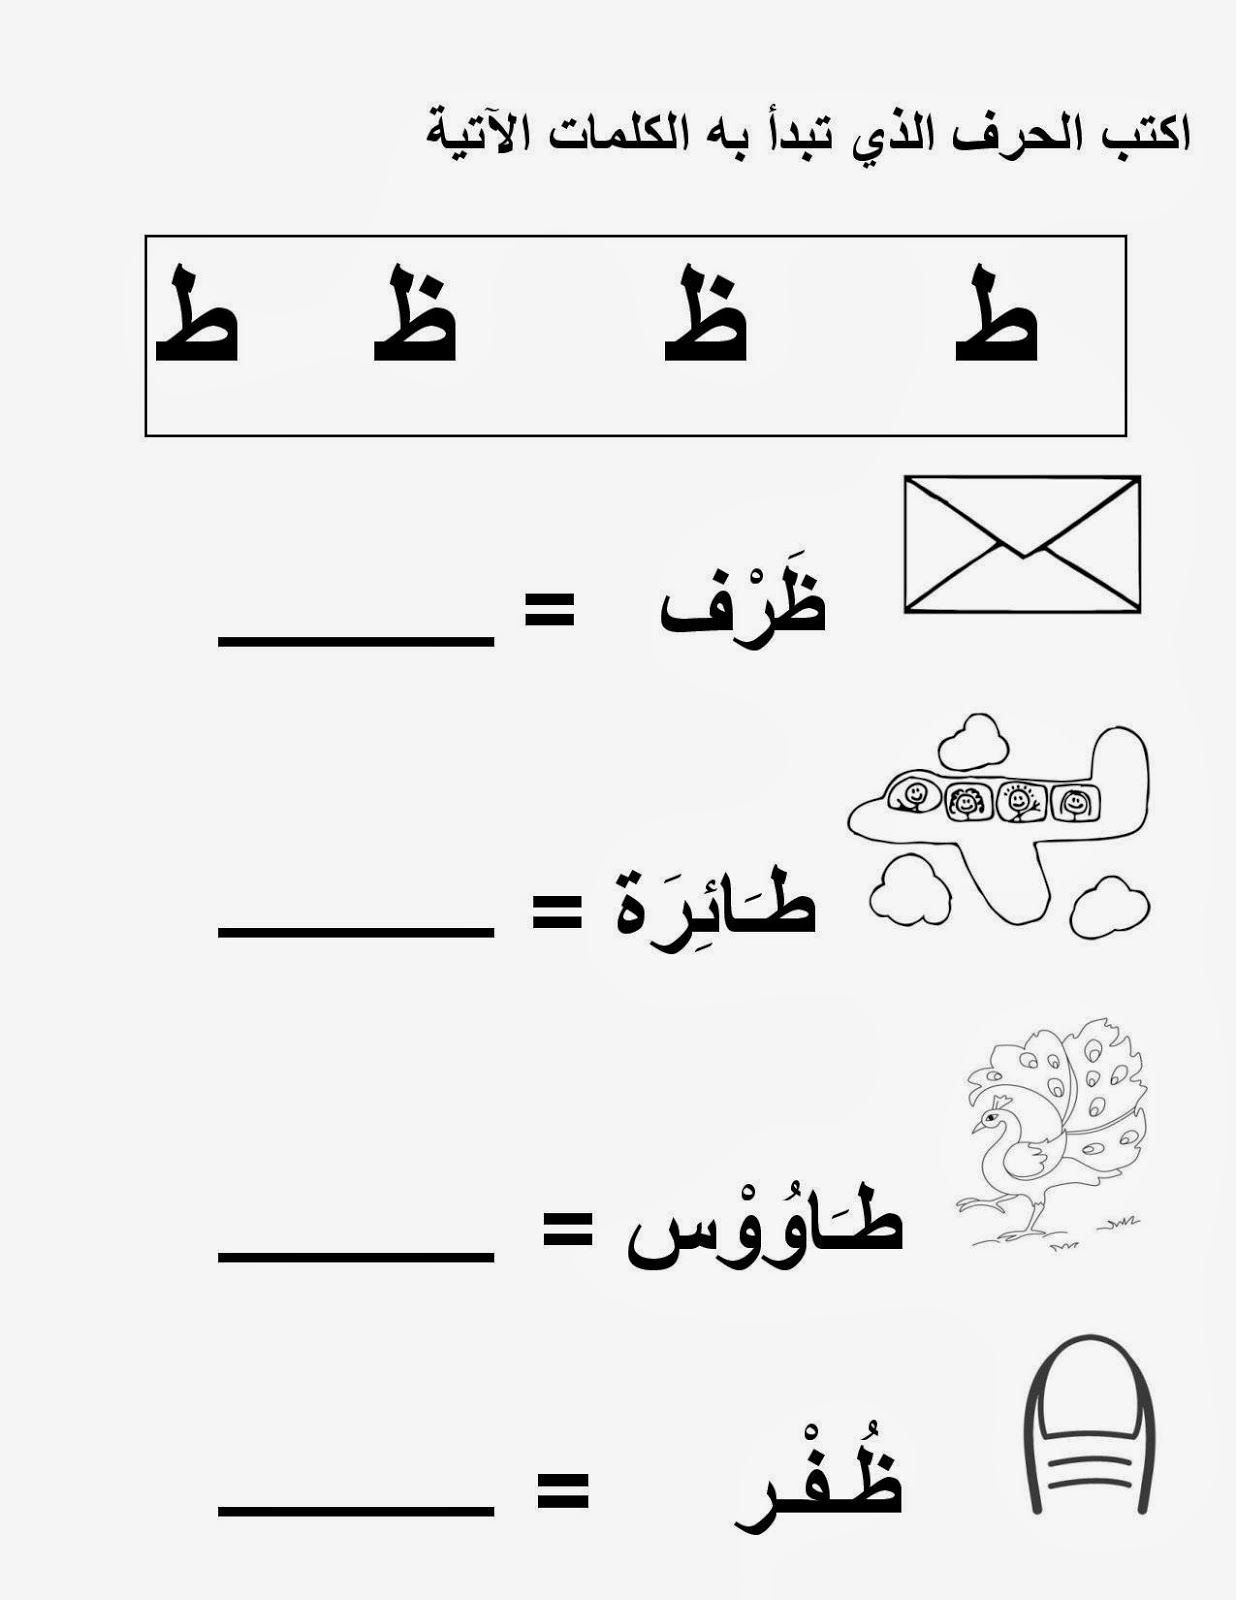 mikahaziq: Alif Ba Ta / Arabic Letters Worksheet for Kids 25th Oct